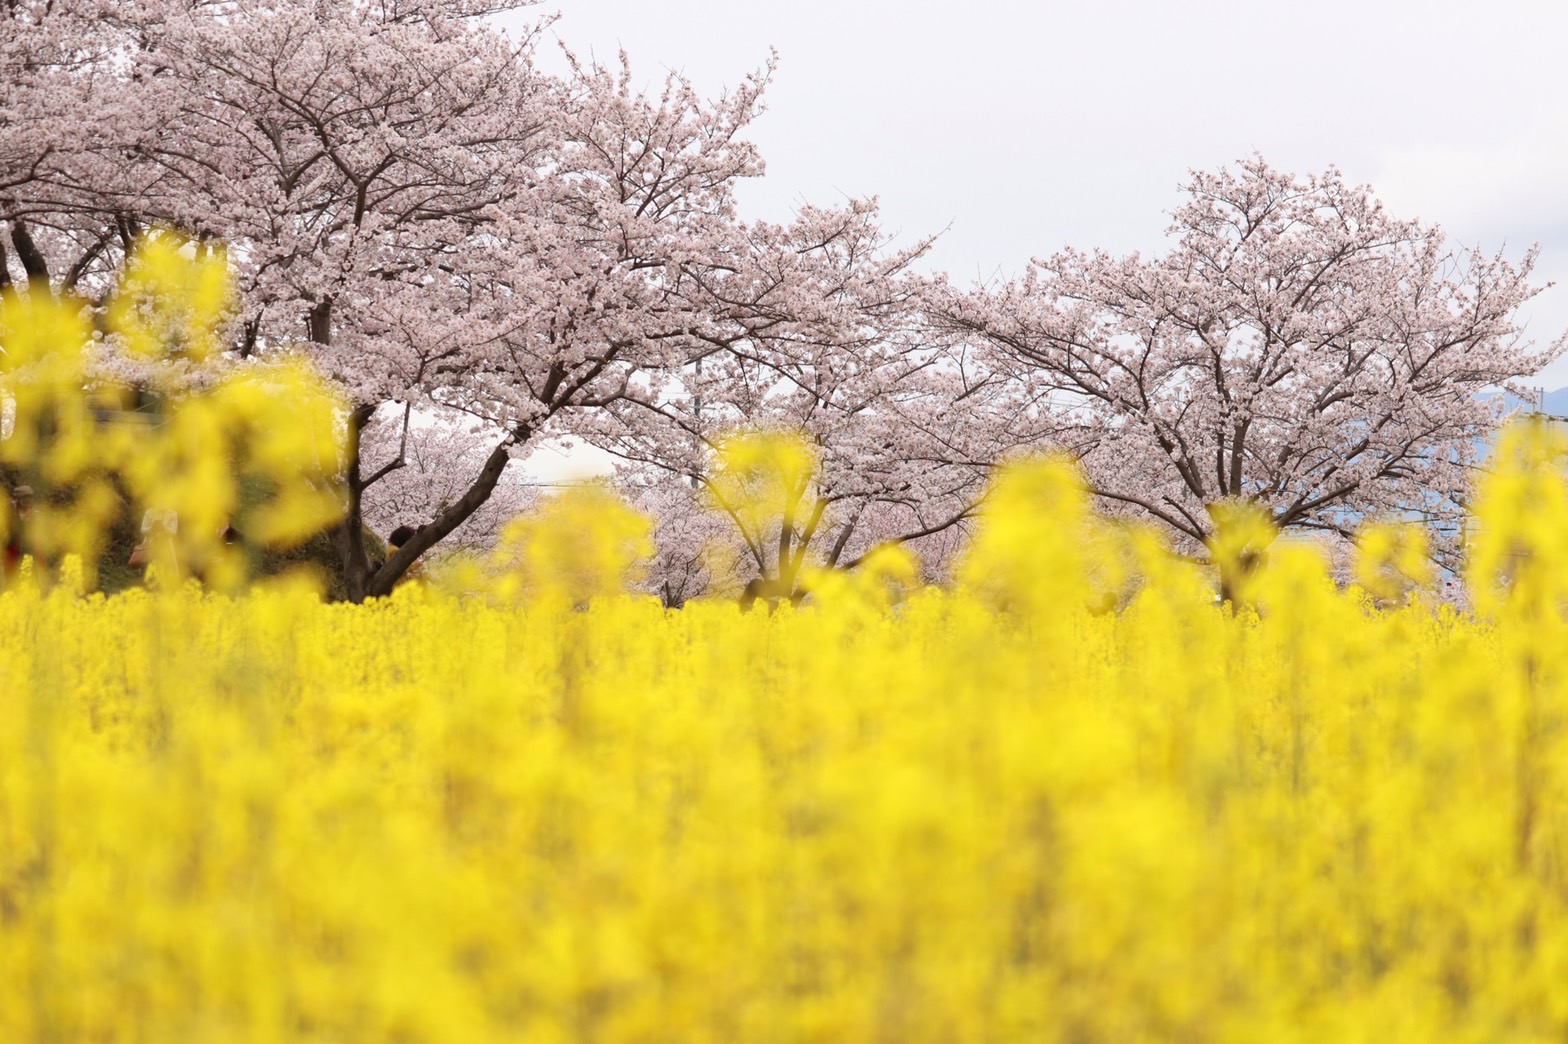 黄色い菜の花とピンク色の桜のコントラストが美しい4月3日撮影時の藤原宮跡（春ゾーン西側）の写真